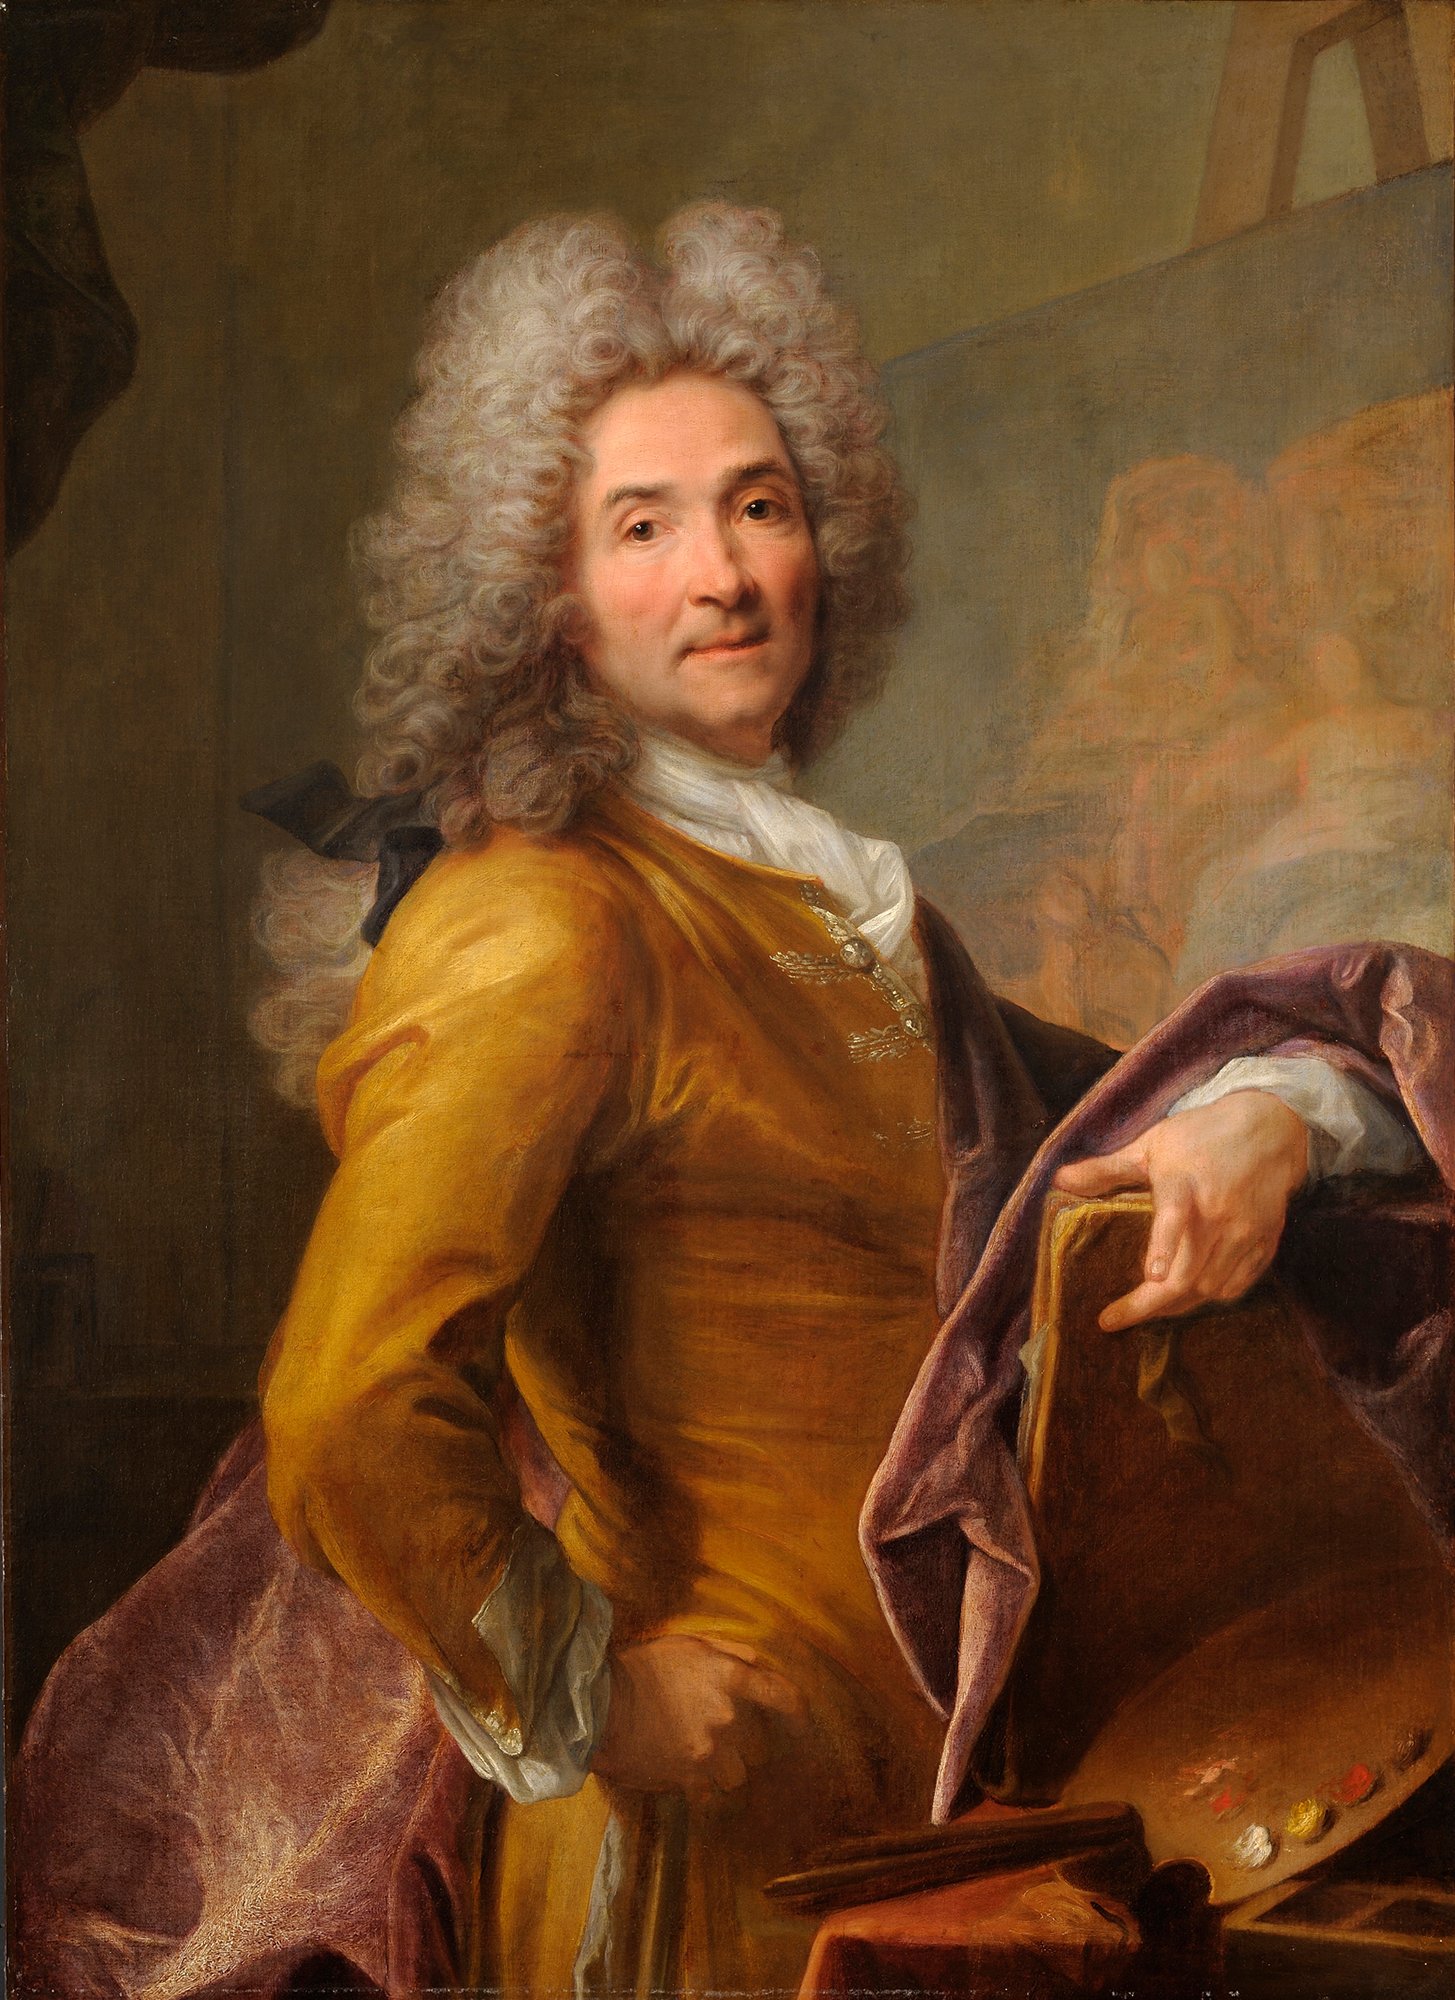 Abbildung des Werks "Selbstporträt mit Palette" von Joseph Vivien aus den Jahren 1715 bis 1720, das in der Ausstellung "Ich bin hier" vom 31. Oktober 2015 bis 31. Januar 2016 in der Staatlichen Kunsthalle Karlsruhe zu sehen war.